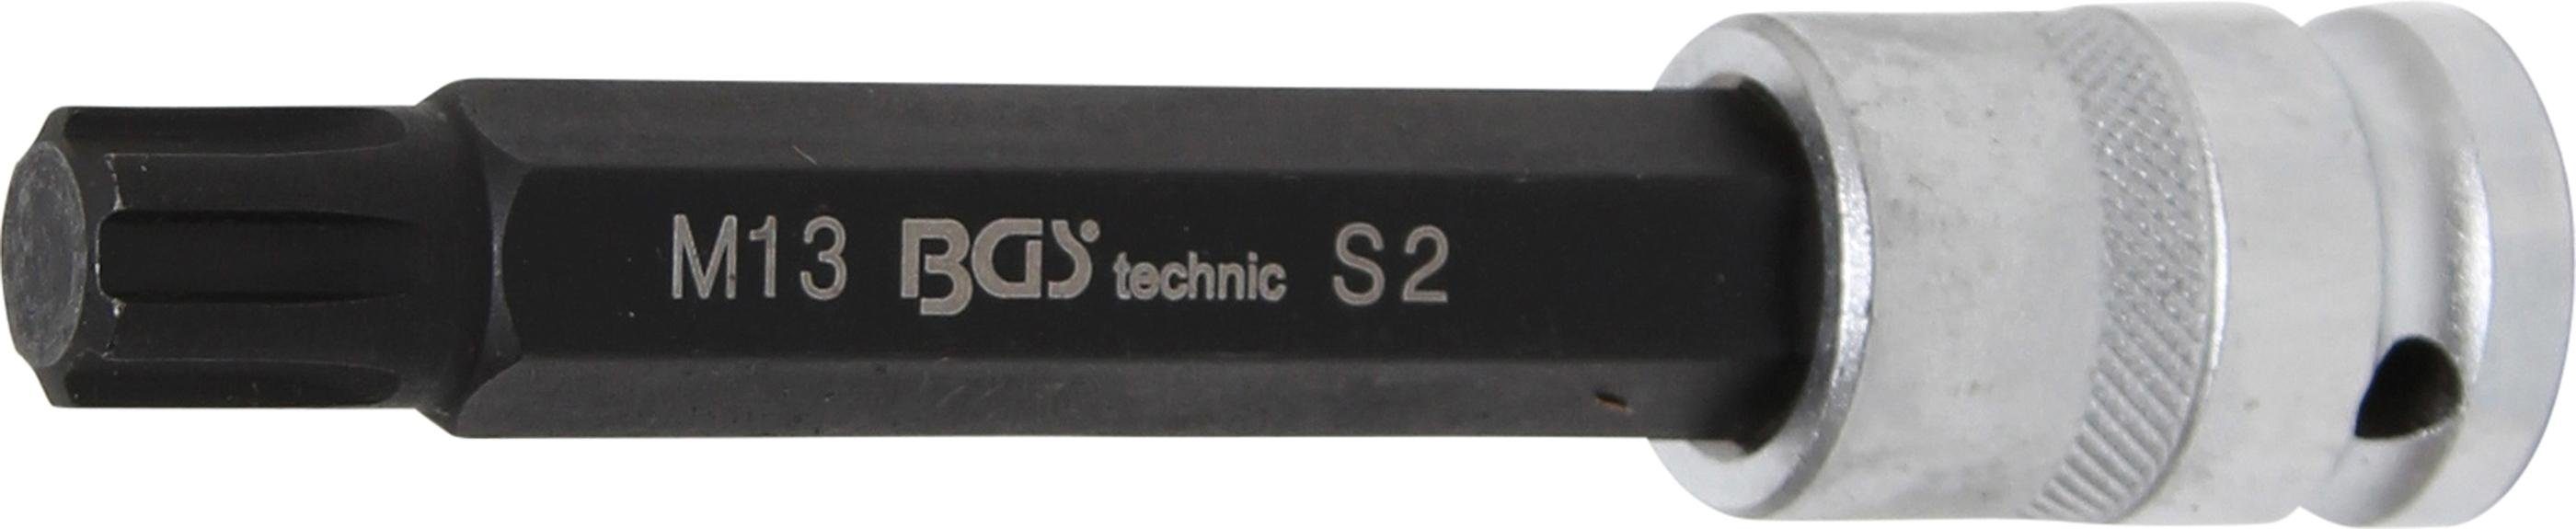 BGS technic Länge Bit-Einsatz, mm, 120 Bit-Schraubendreher Keil-Profil Antrieb M13 12,5 mm RIBE) (1/2), Innenvierkant (für